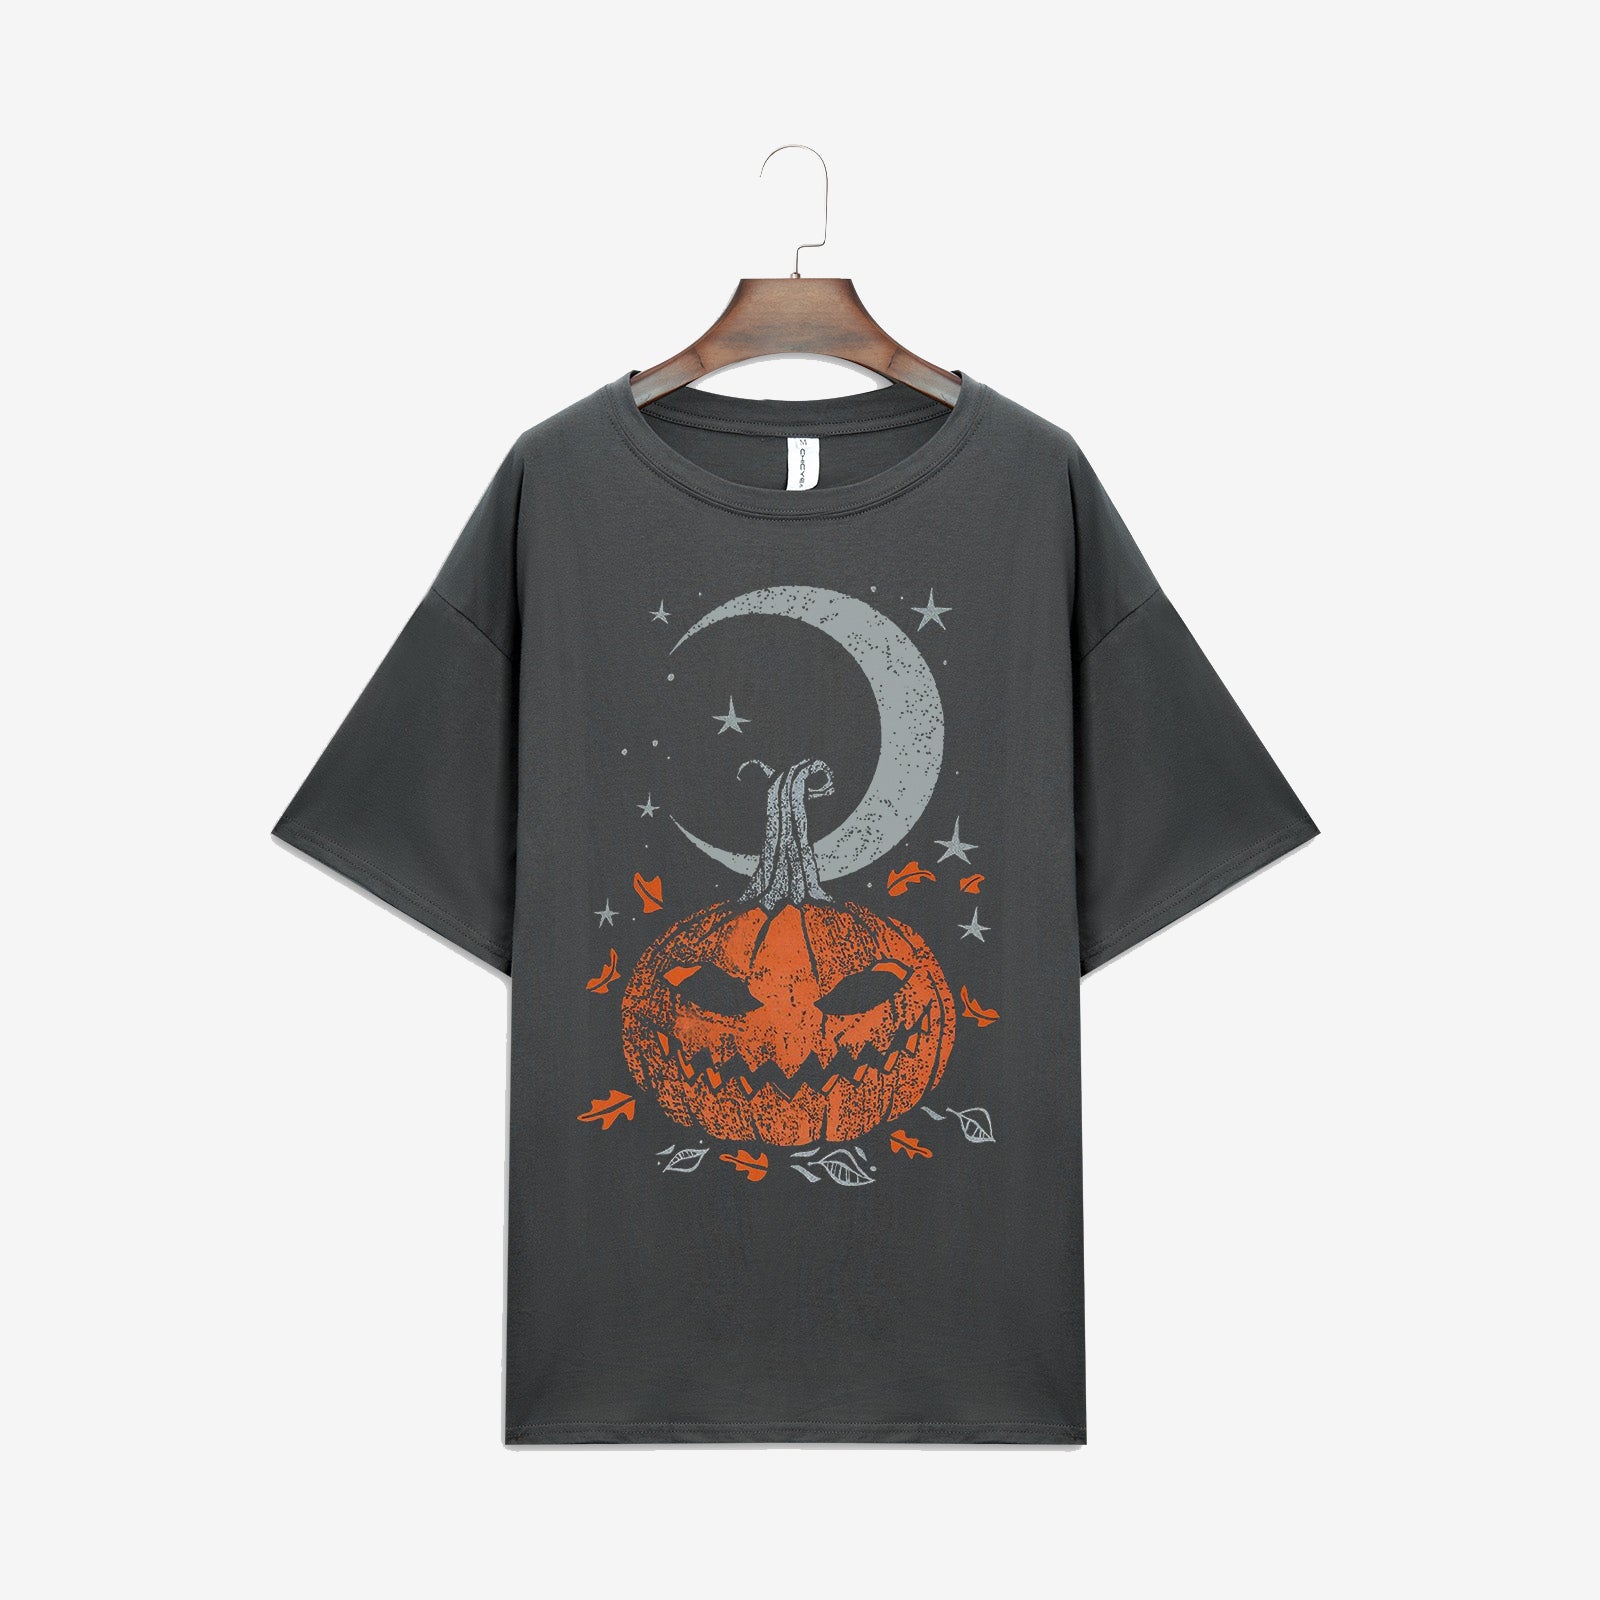 Minnieskull Pumpkin Moon Star Print Casual T-Shirt - chicyea